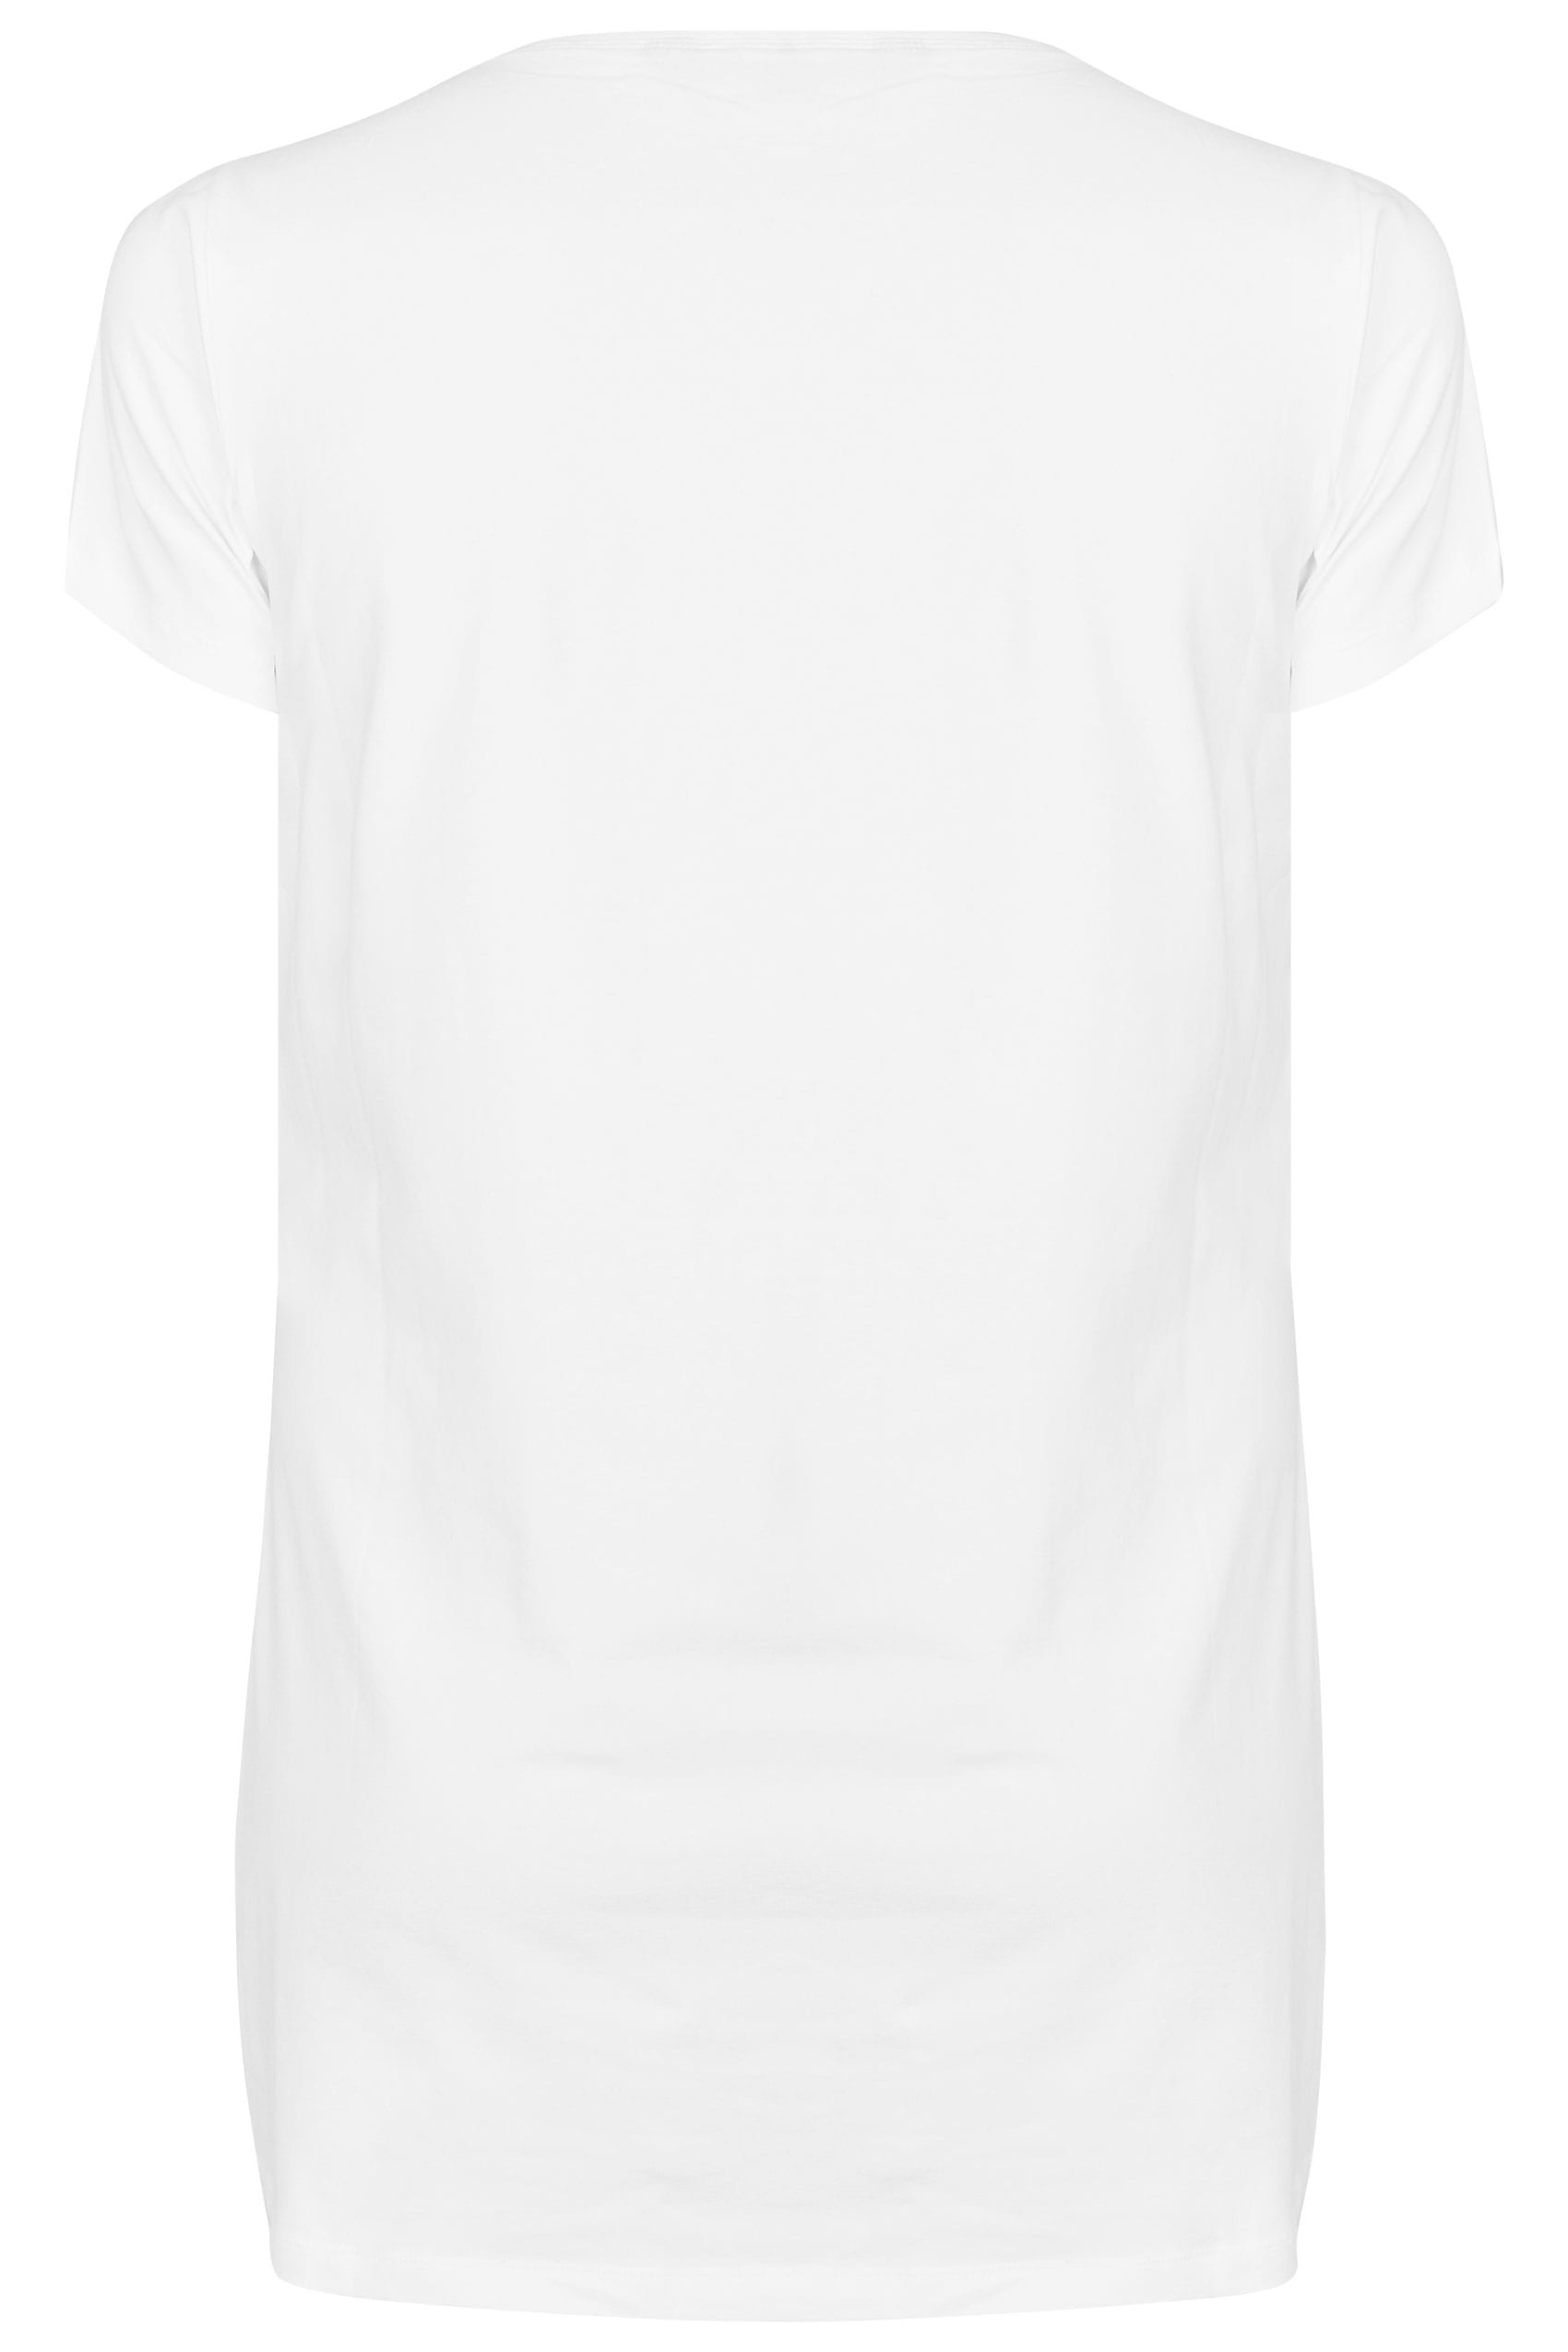 Grande taille  Tops Grande taille  T-Shirts Basiques & Débardeurs | T-Shirt Blanc Coupe Longue - DU46272